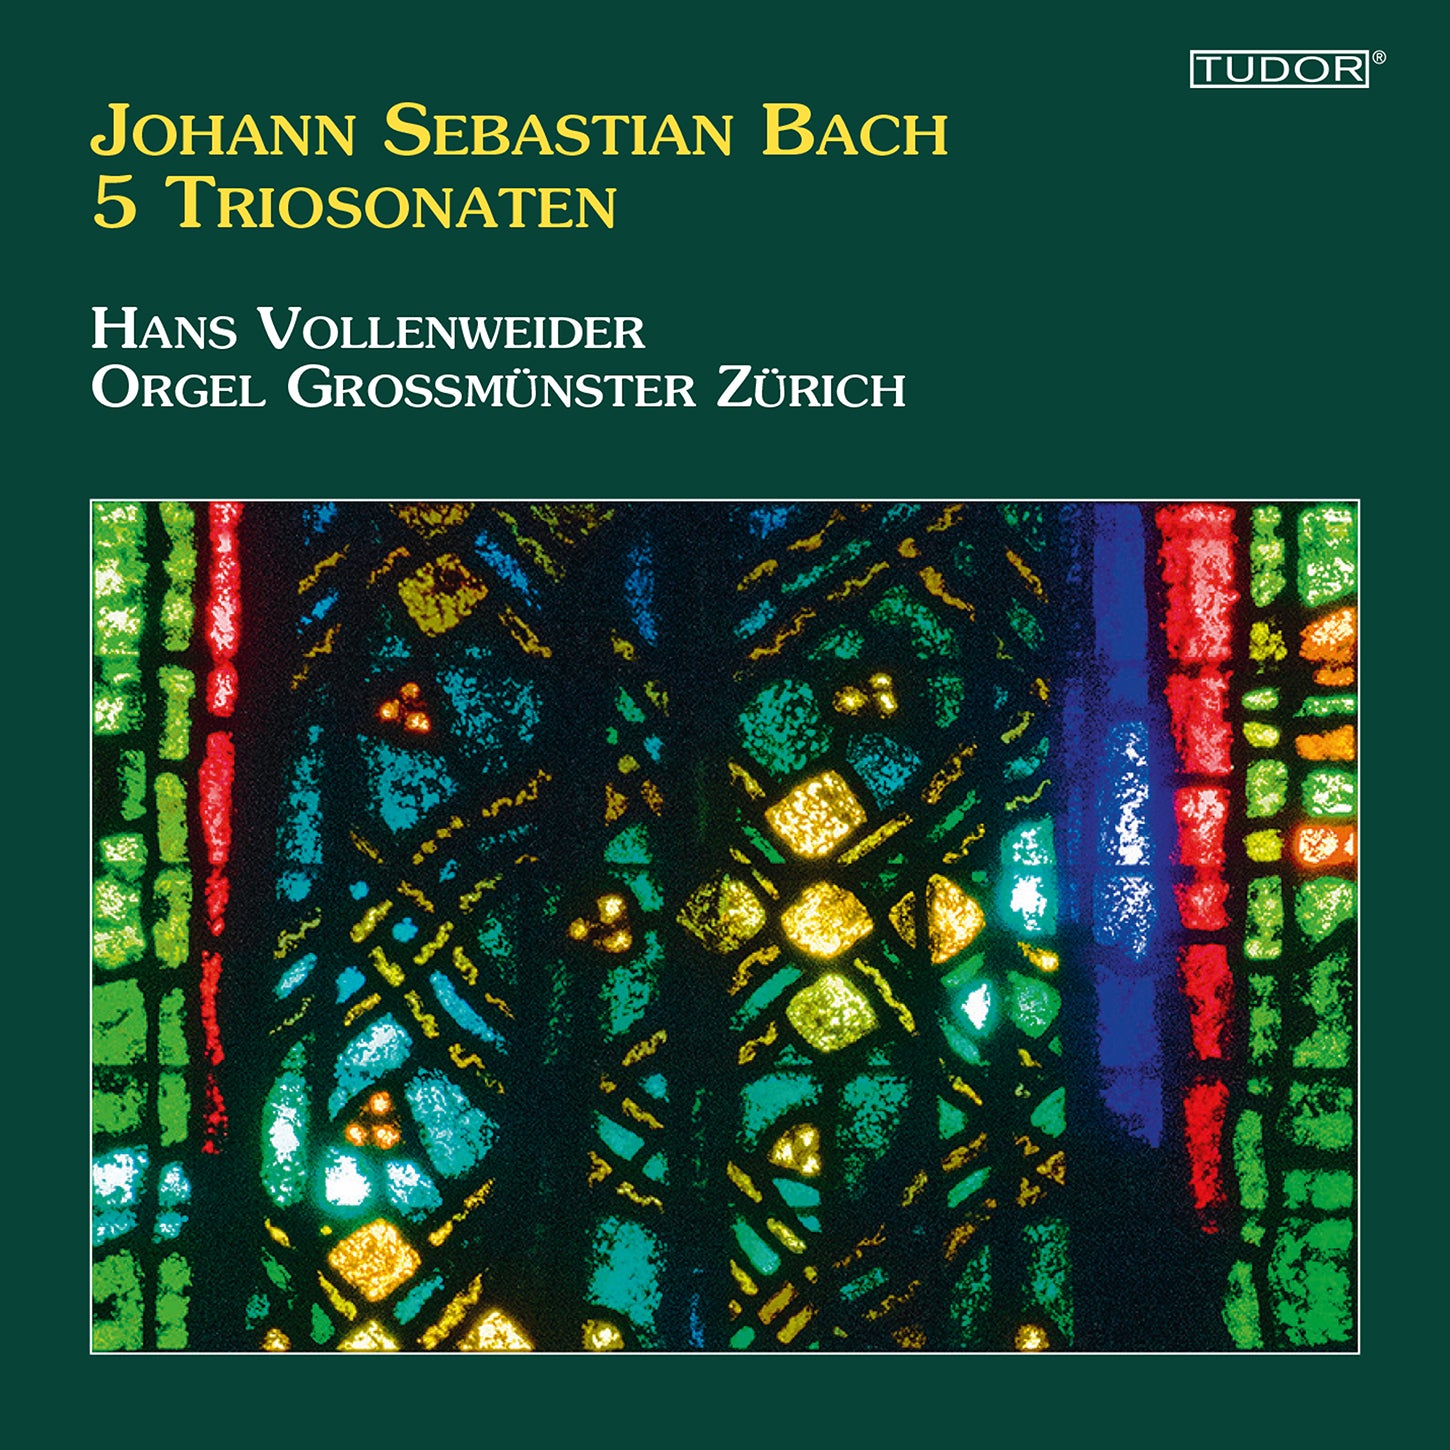 Bach: 5 Sonatas on the Organ of the Zurich Grossmünster / Vollenweider